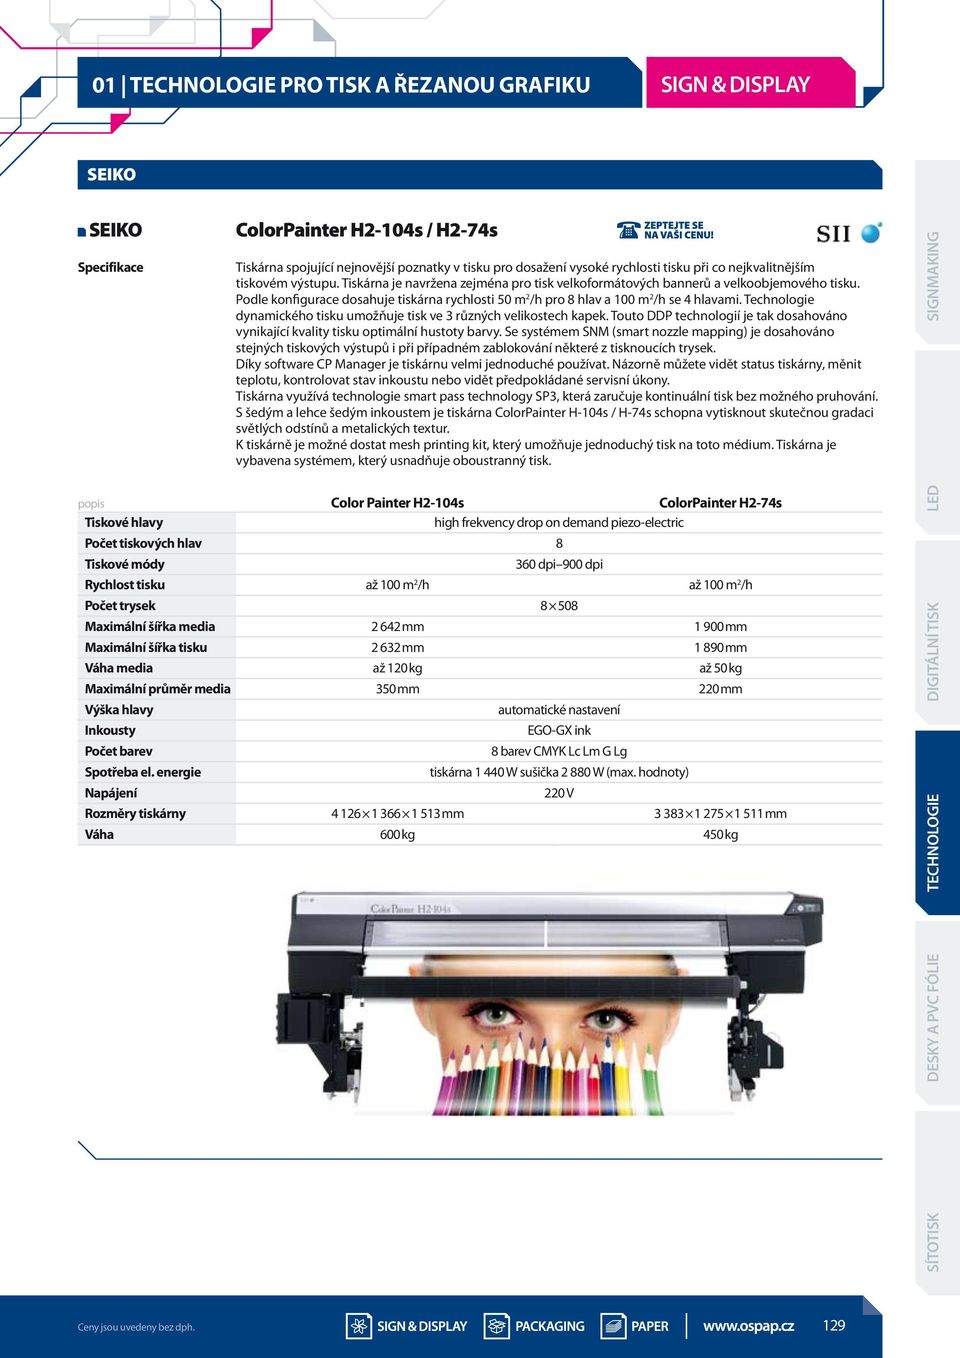 Technologie dynamického tisku umožňuje tisk ve 3 různých velikostech kapek. Touto DDP technologií je tak dosahováno vynikající kvality tisku optimální hustoty barvy.